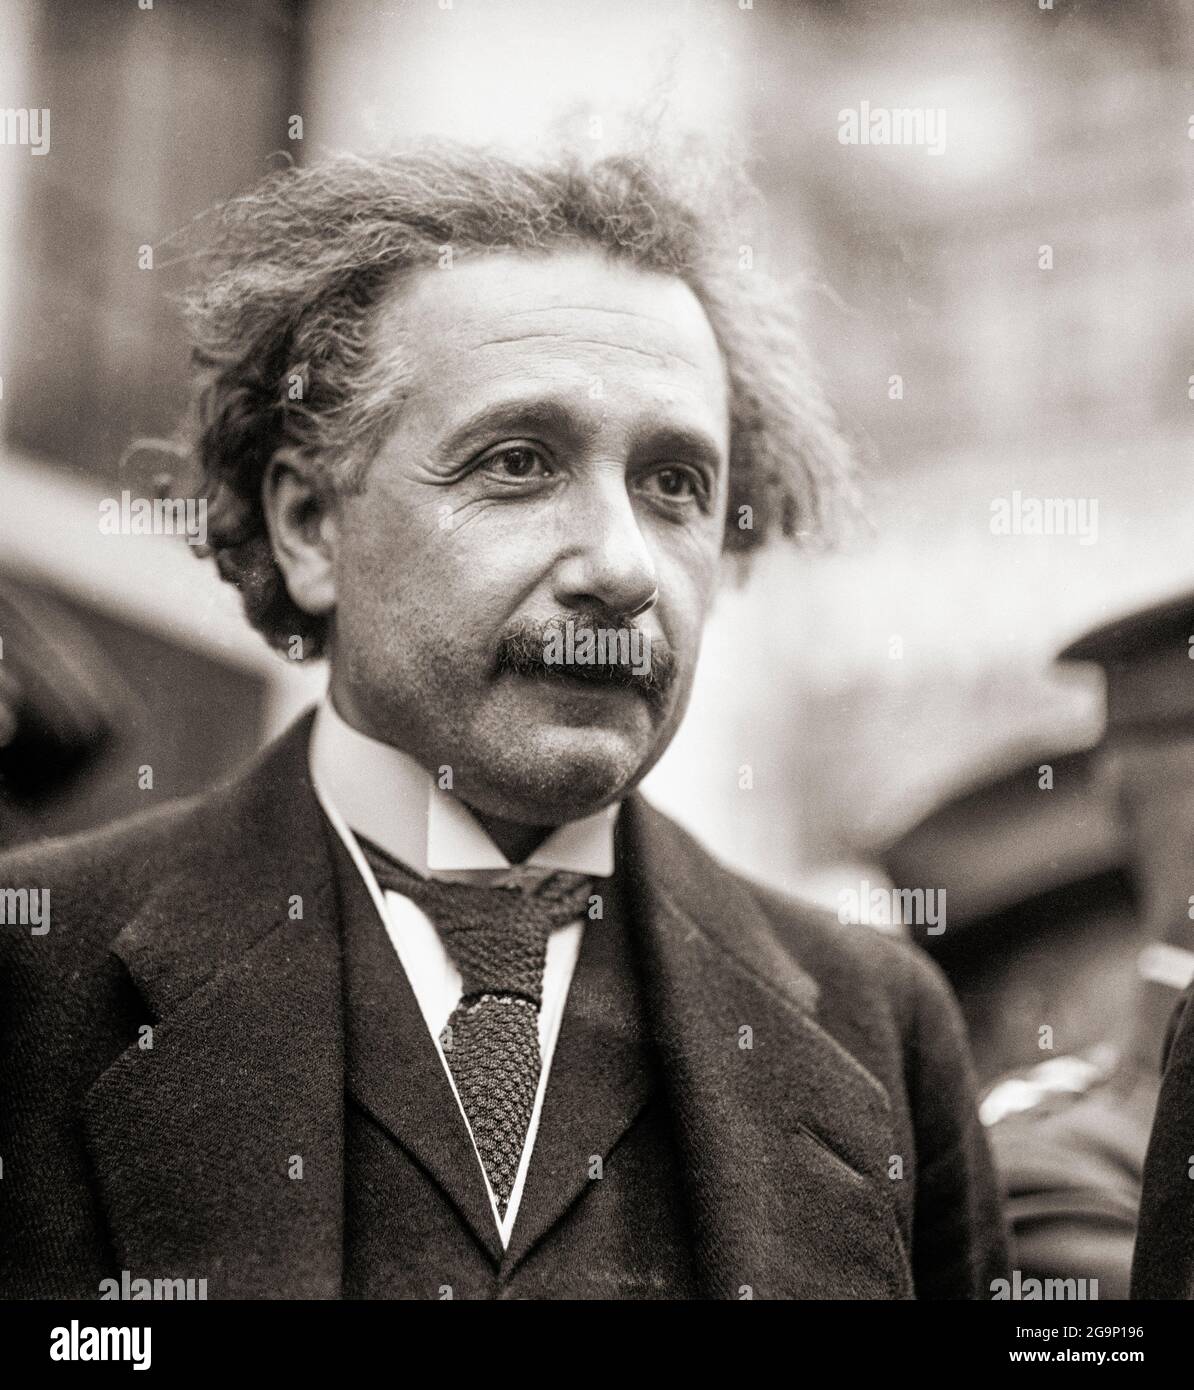 Albert Einstein, 1879 - 1955. Físico teórico nacido en Alemania. Entre muchos logros, presentó teorías de la Relatividad General, la Relatividad Especial y la equivalencia entre masa y energía. Foto de stock